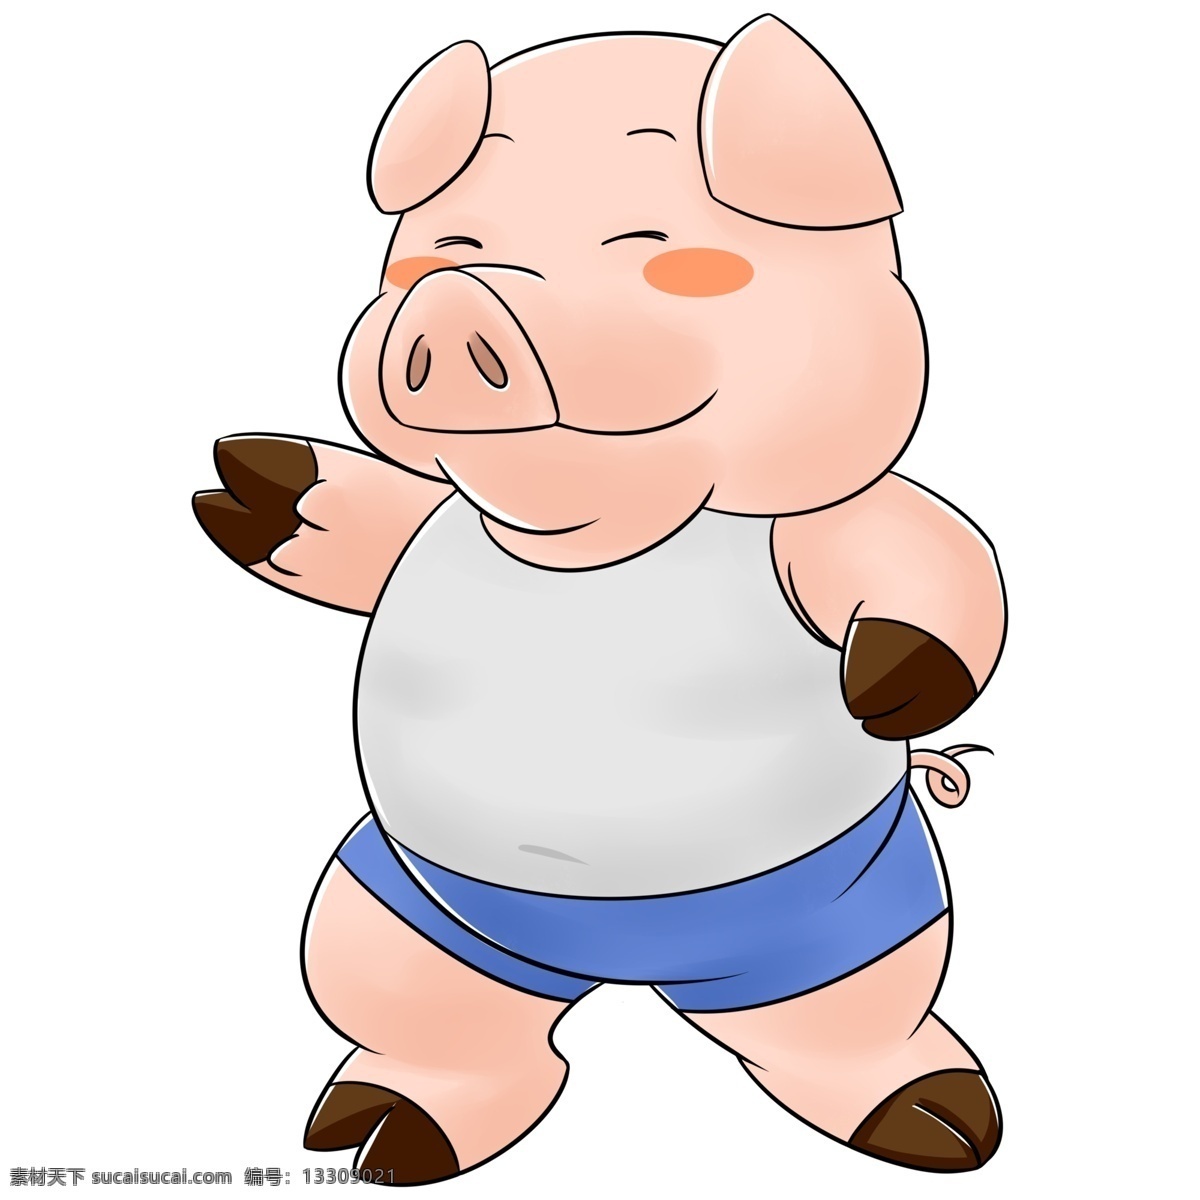 小胖 猪 商用 胖猪 小猪 肥猪 动物 胖胖 肥胖